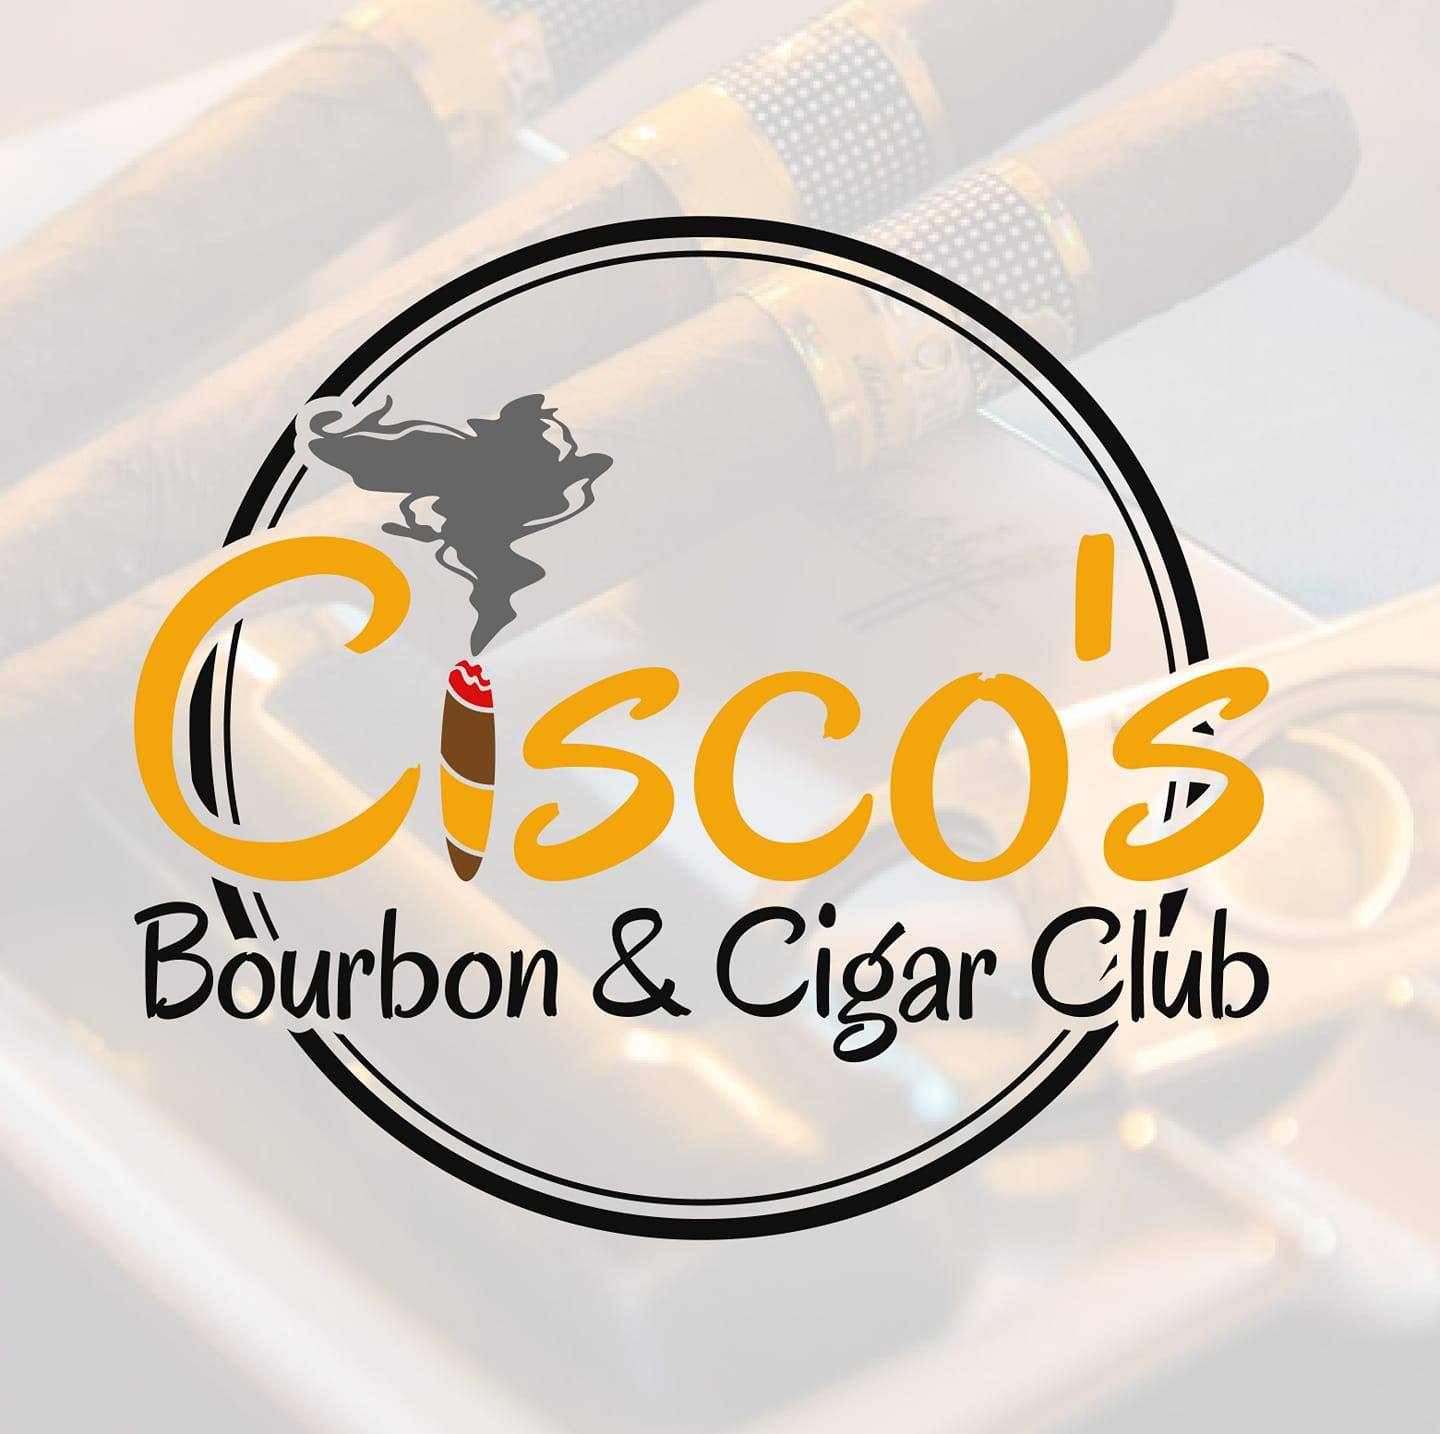 Cisco's Bourbon And Cigar Club